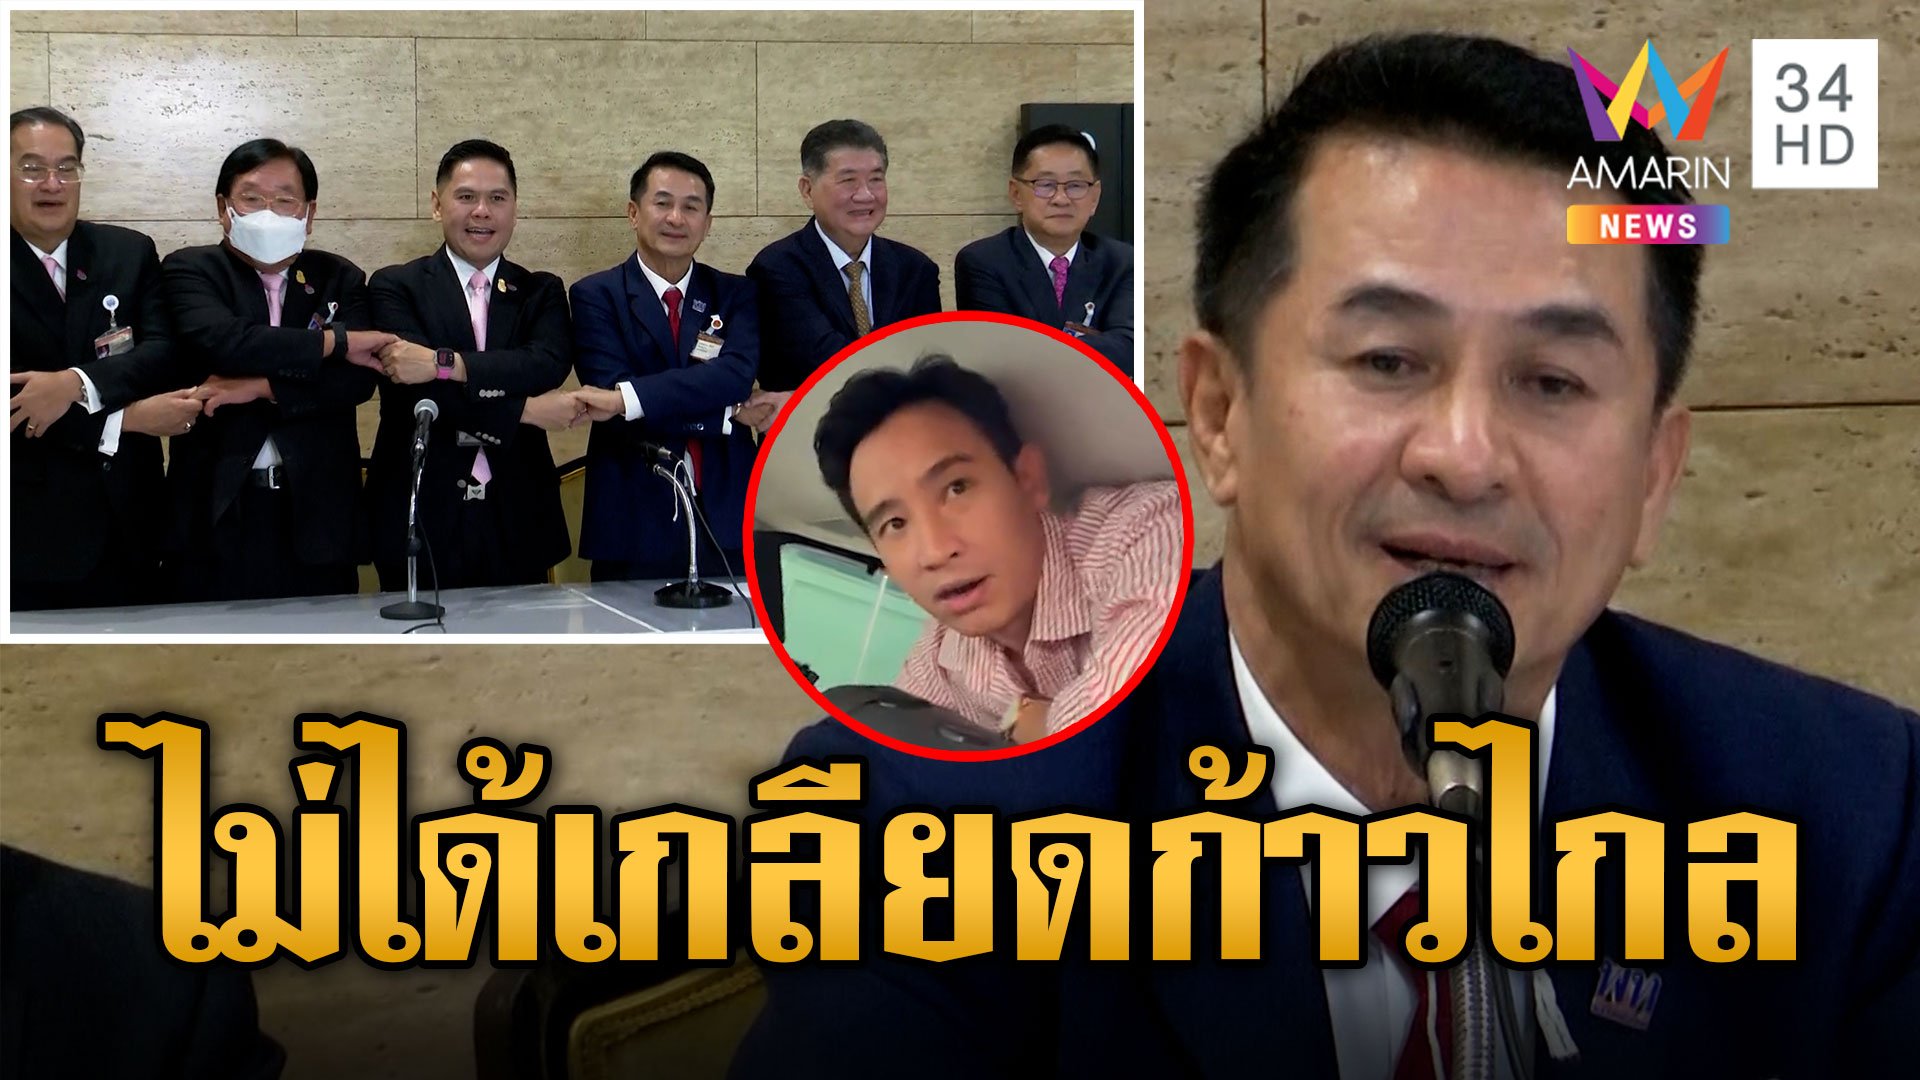 "ชาติไทยพัฒนา" ร่วม "เพื่อไทย" ตั้ง รบ. ชลน่านลั่นไม่ได้เกลียดก้าวไกล | ข่าวเที่ยงอมรินทร์ | 10 ส.ค. 66 | AMARIN TVHD34